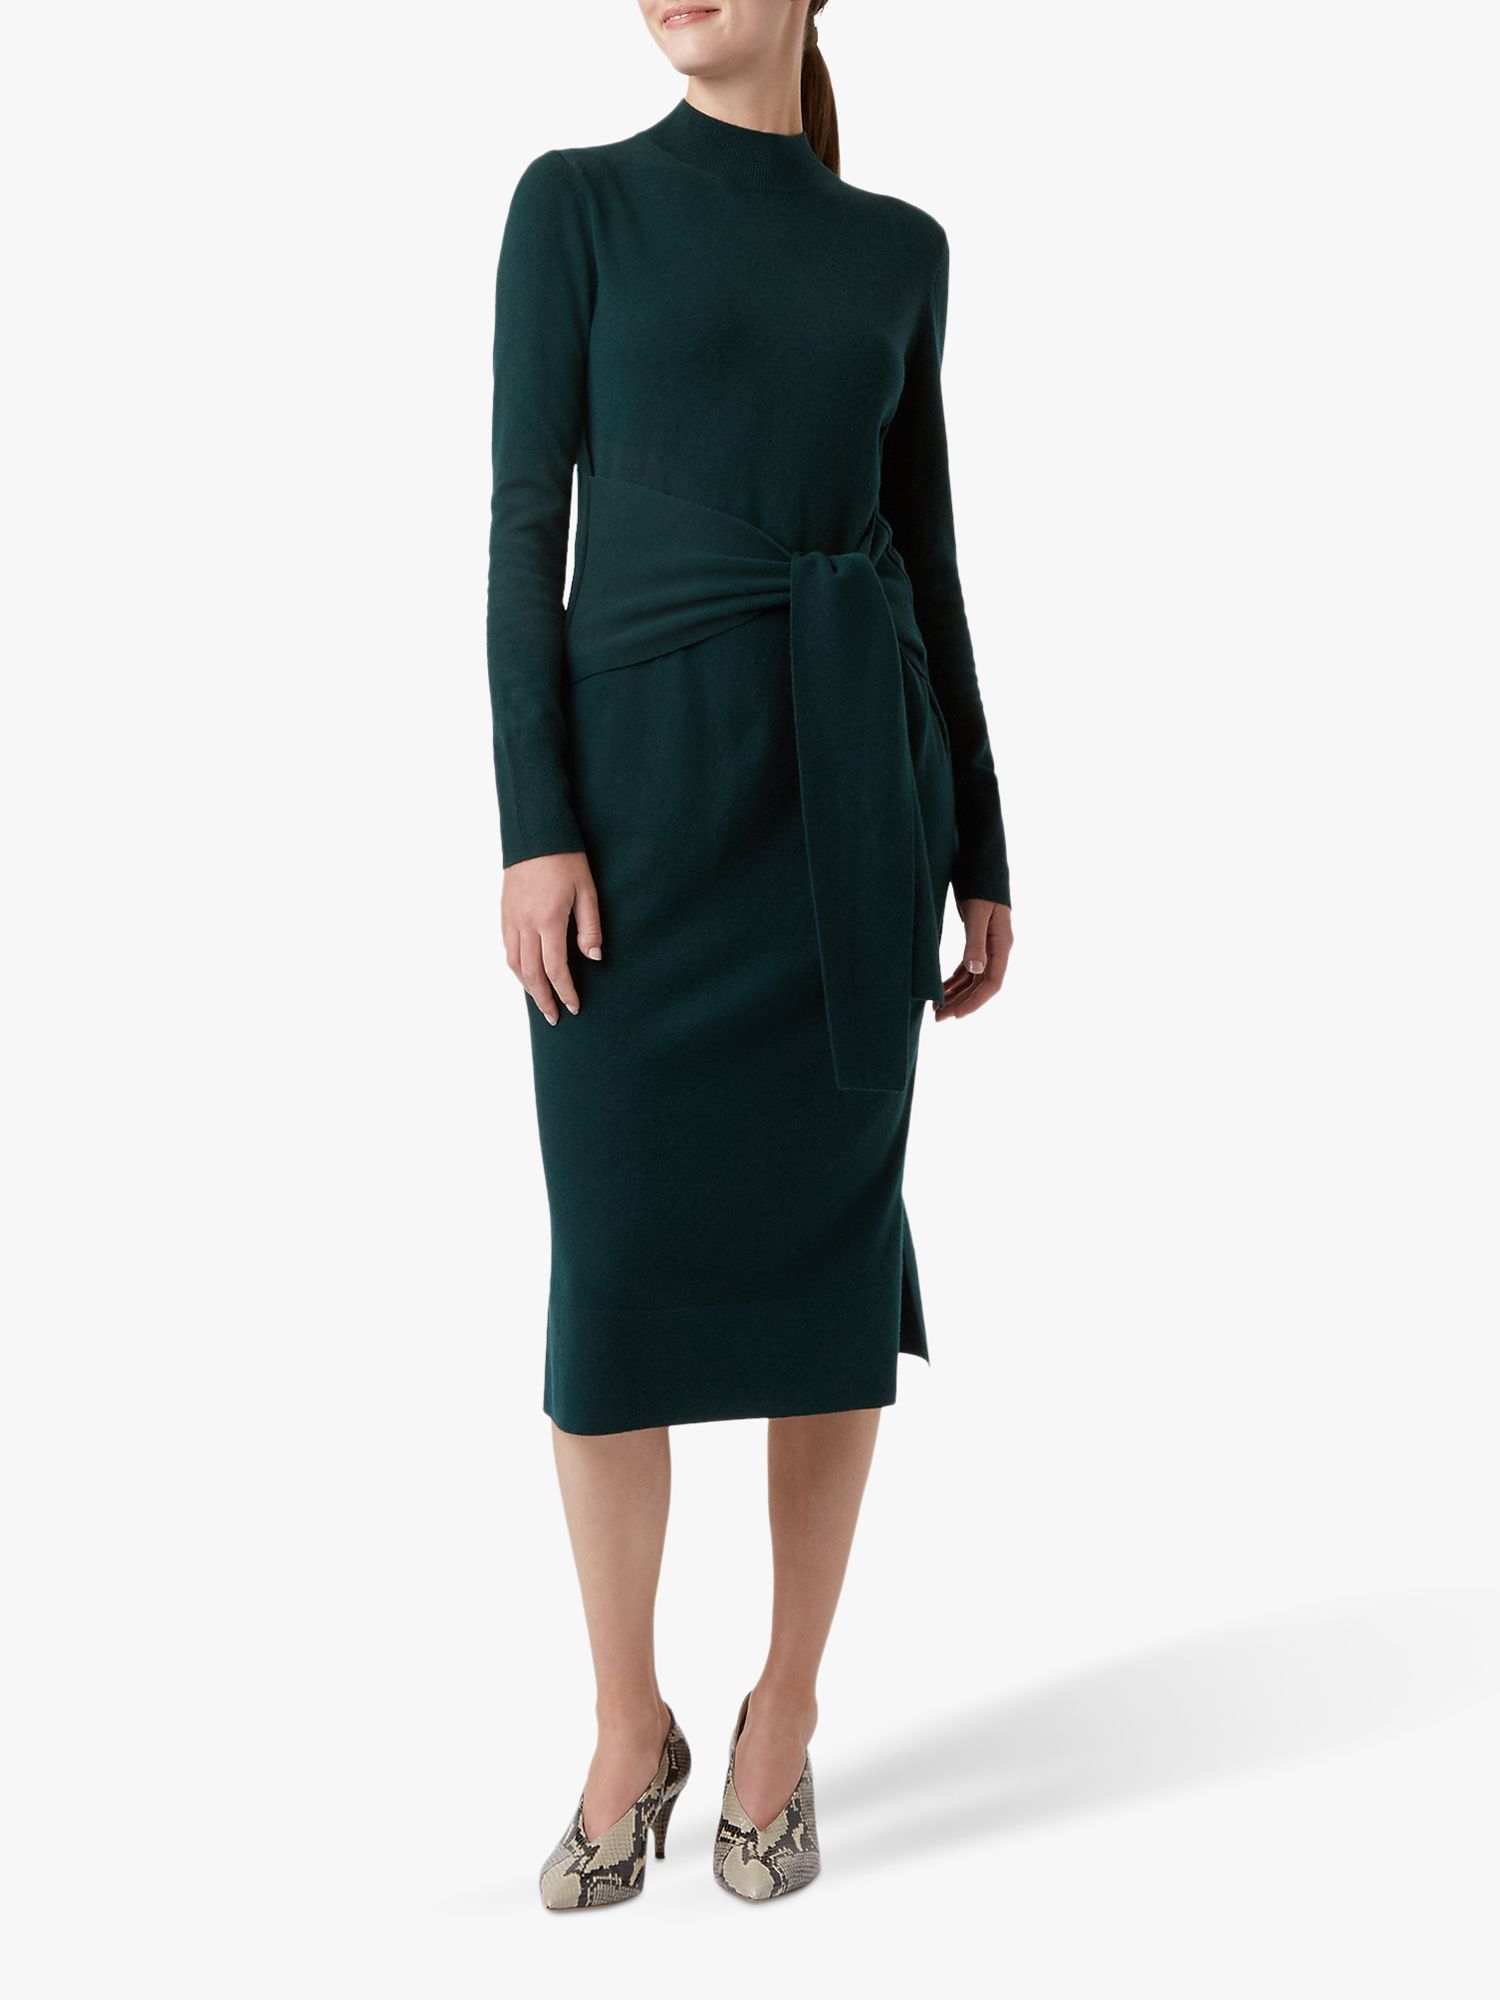 Hobbs Tilly Knitted Dress, Deep Green